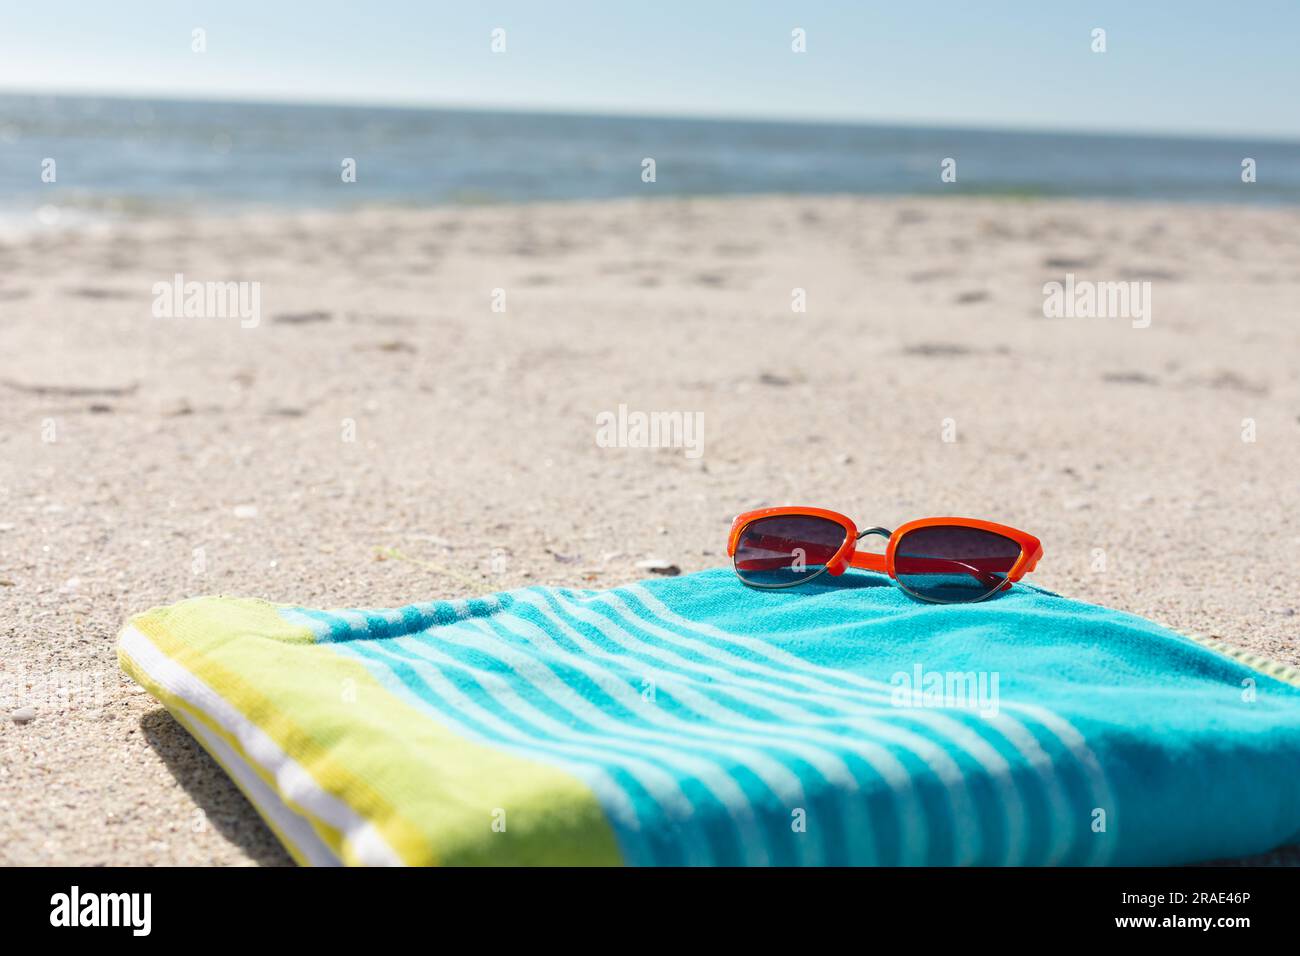 Lunettes de soleil rouges sur serviette rayée verte et bleue sur plage de sable ensoleillée au bord de la mer, espace copie Banque D'Images